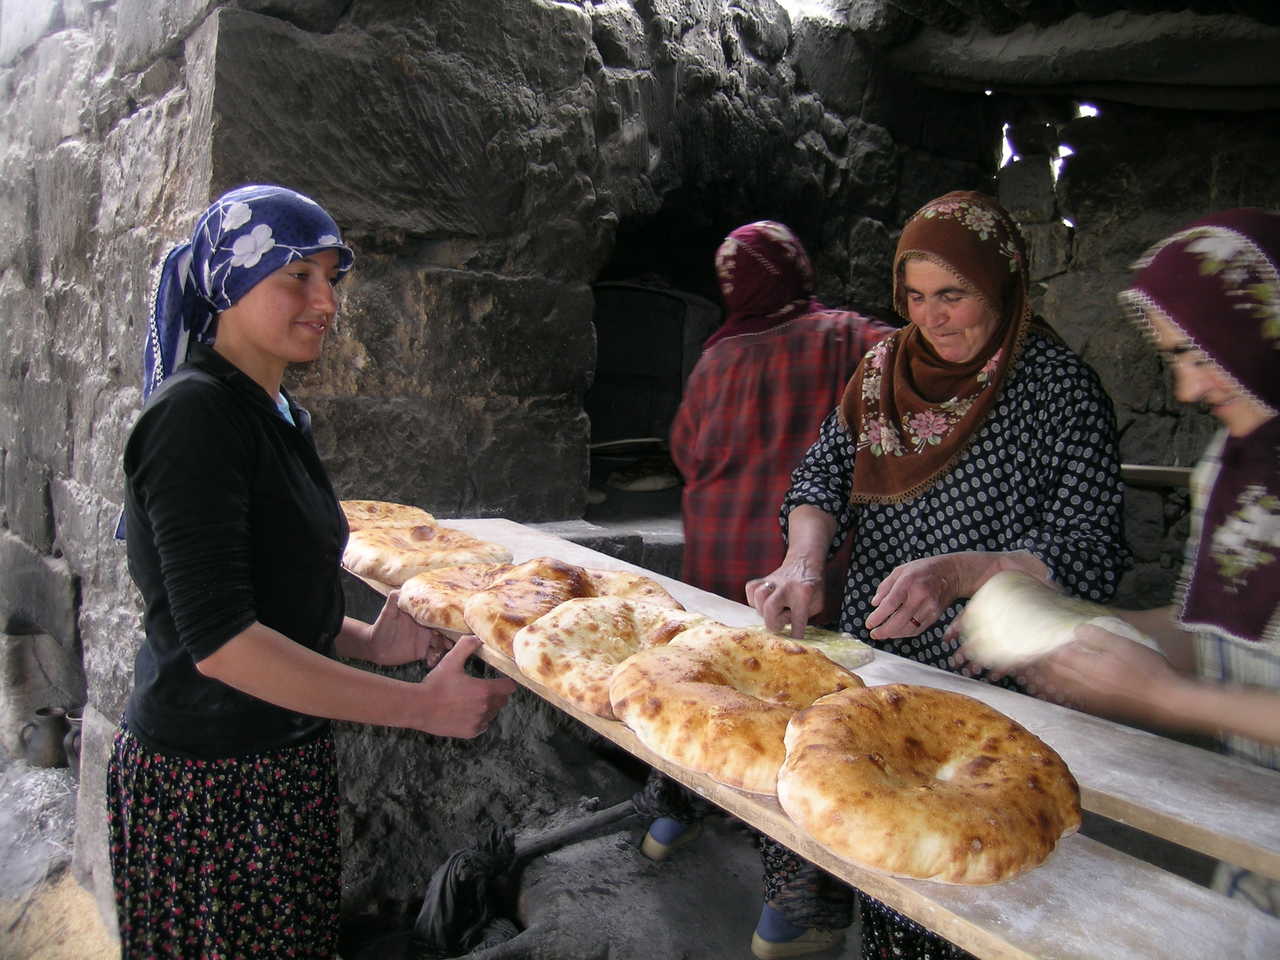 Femmes turques préparant des brioches, Turquie